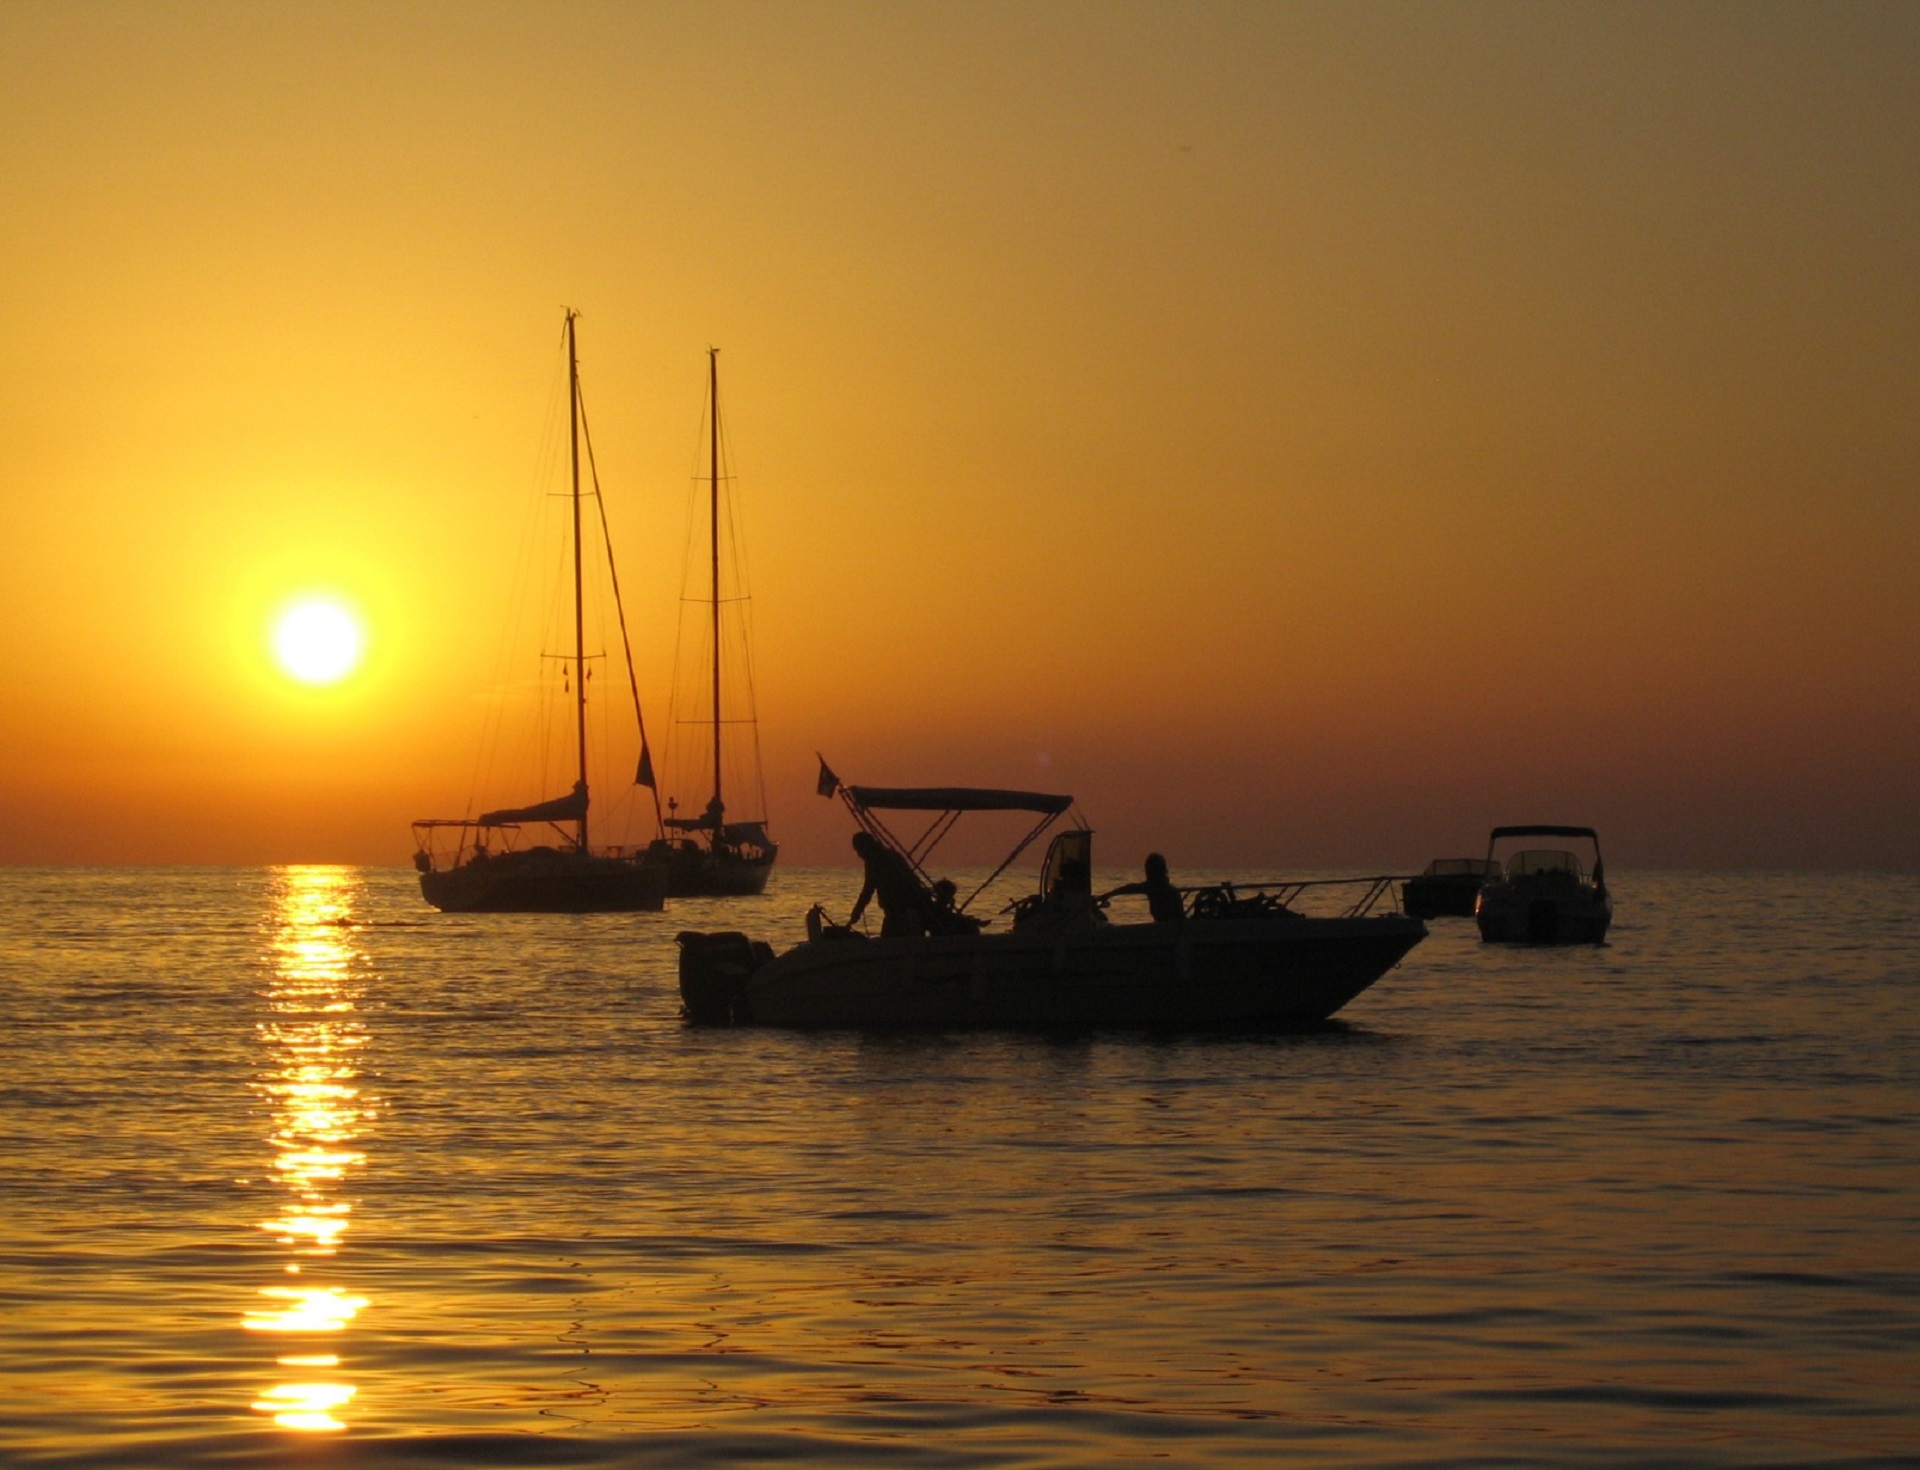 Sunset on the sea photo